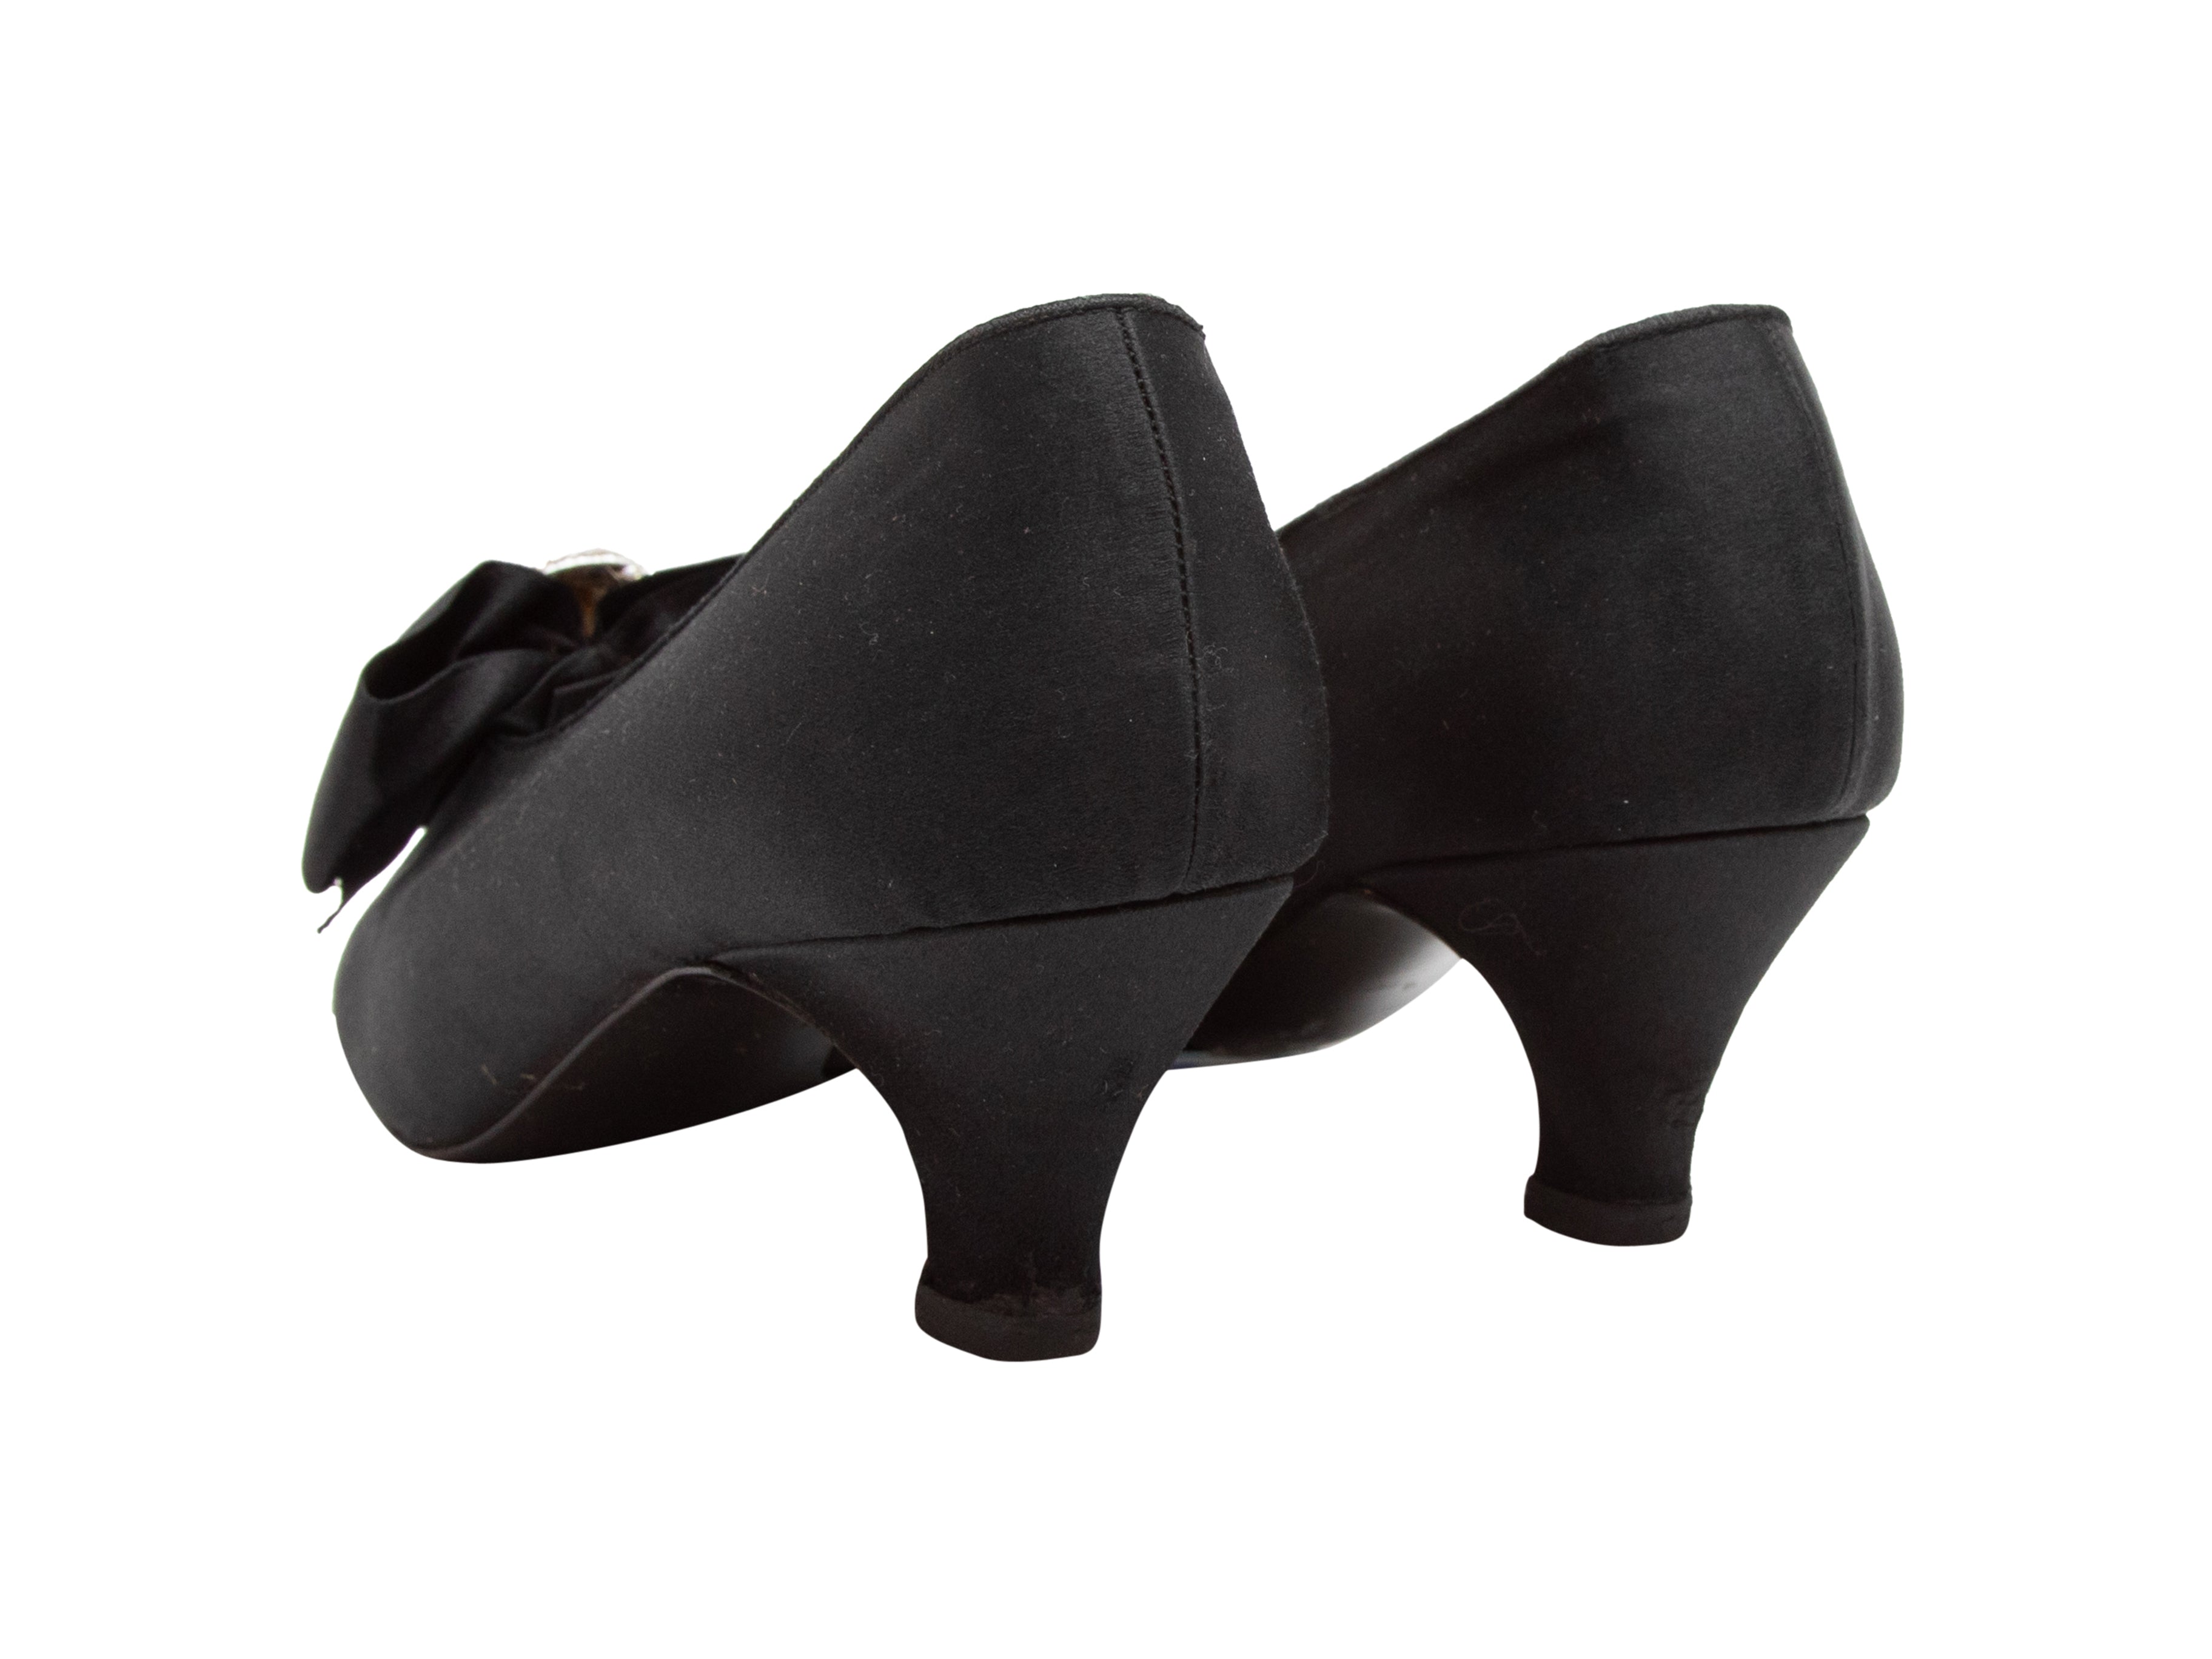 Vintage Black Chanel Pointed-Toe Satin Bow Pumps Size 39 – Designer Revival